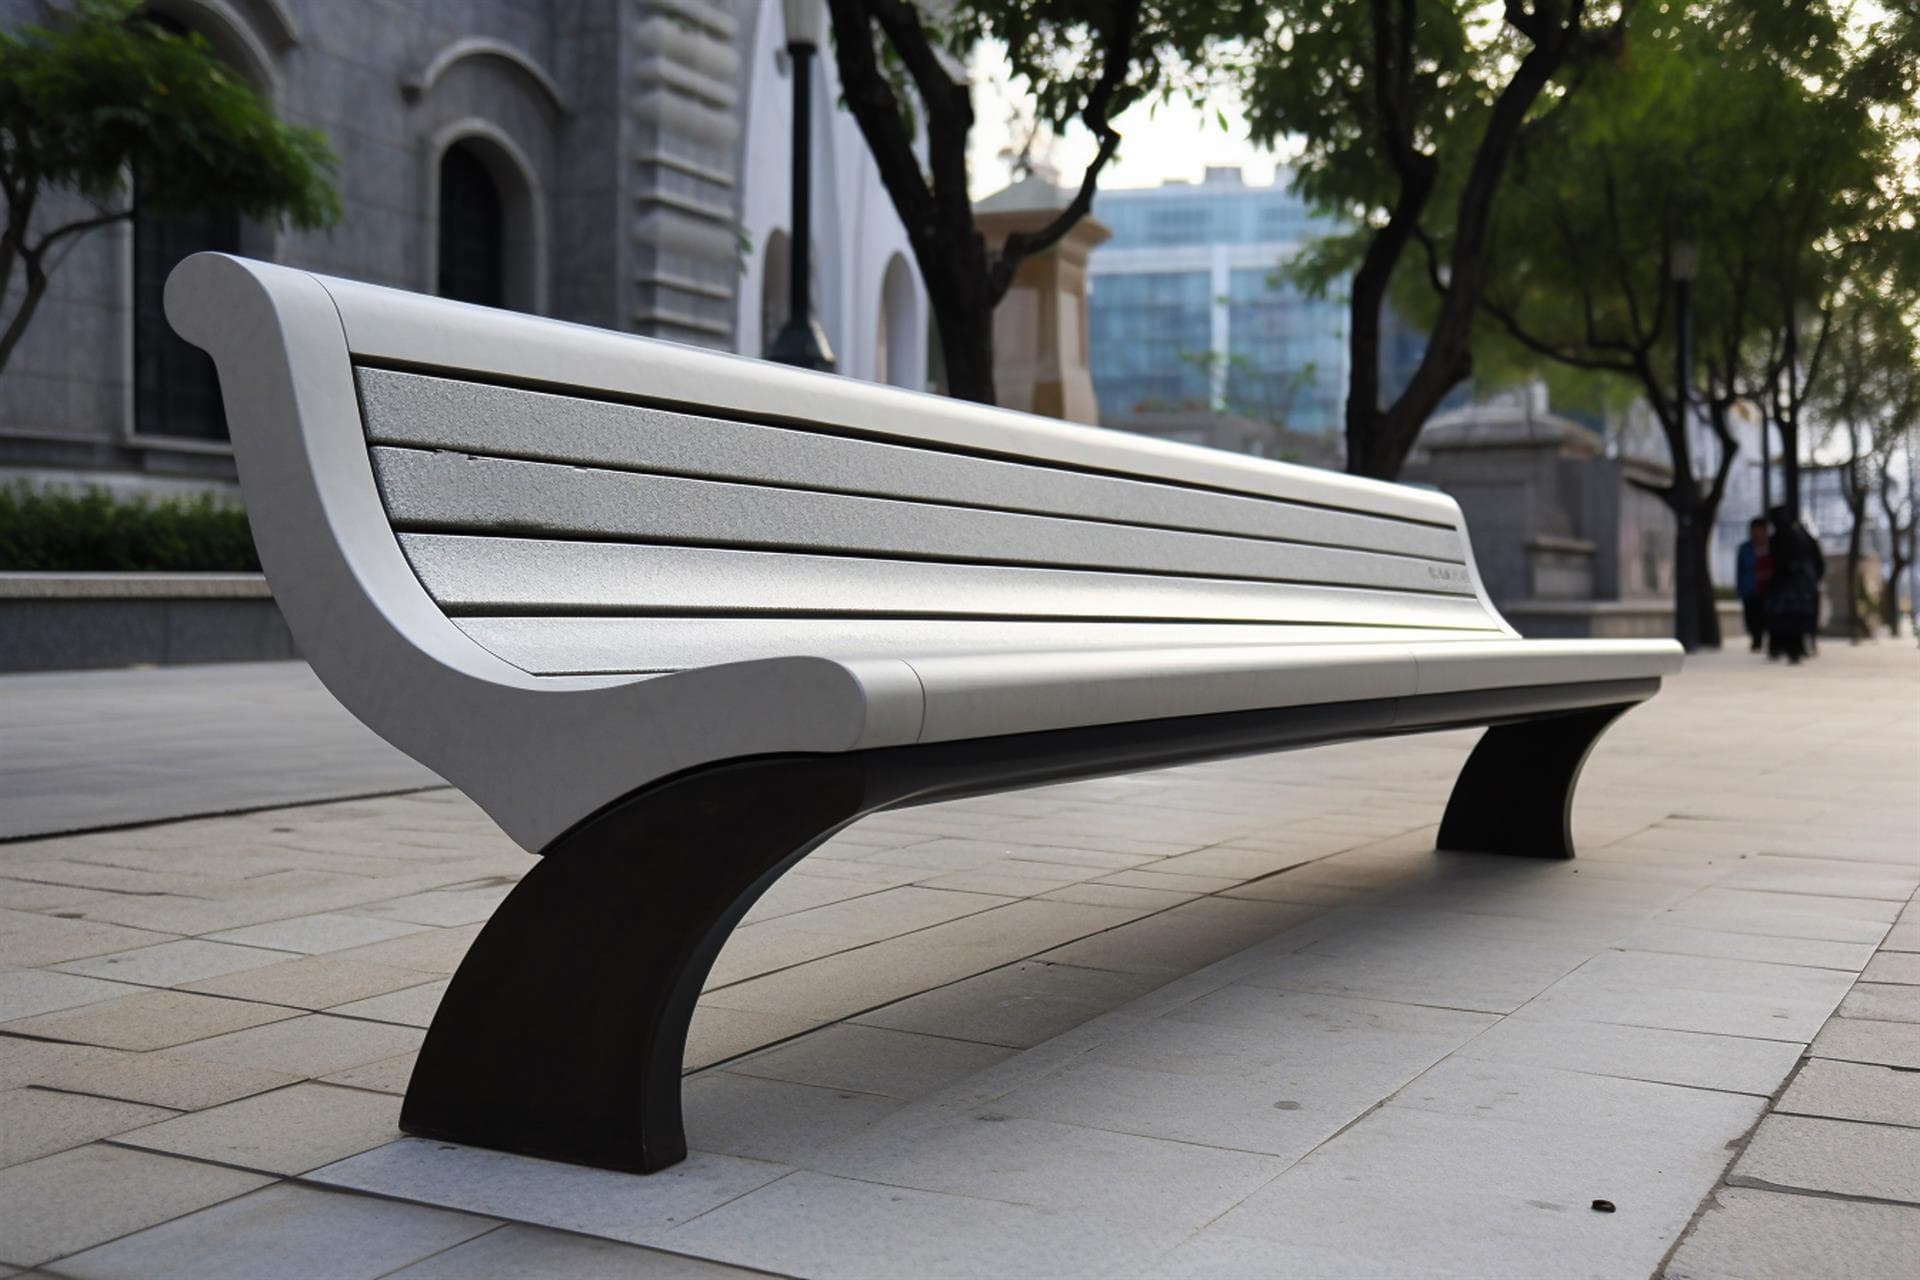 Embellece tu ciudad con nuestros elementos de mobiliario urbano metálico en Pontevedra